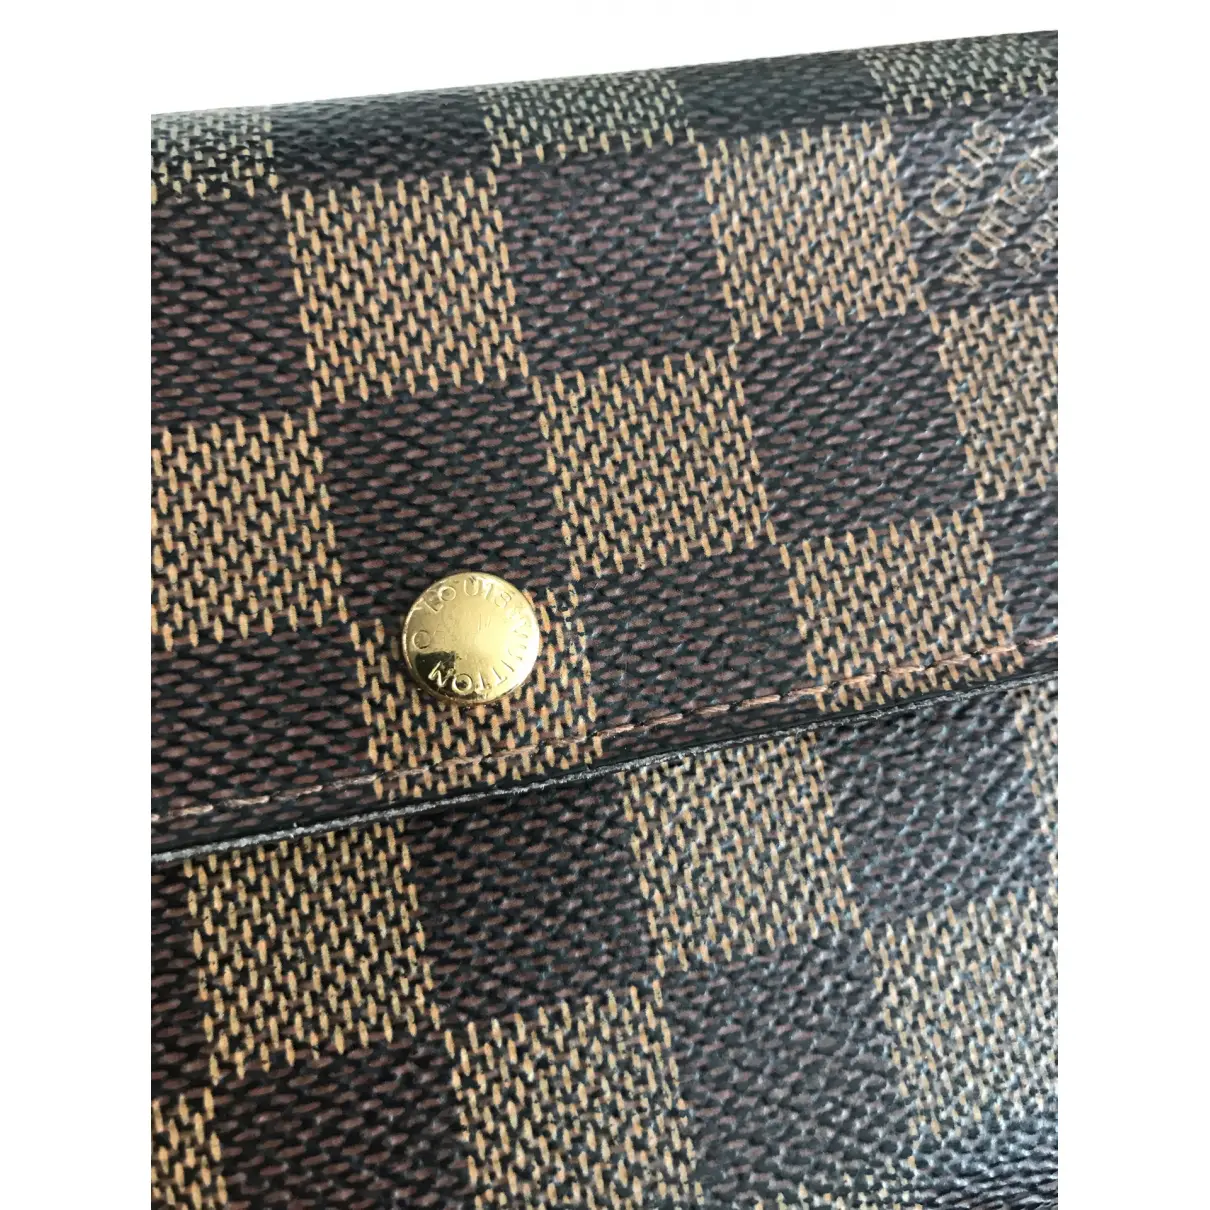 Sarah leather wallet Louis Vuitton